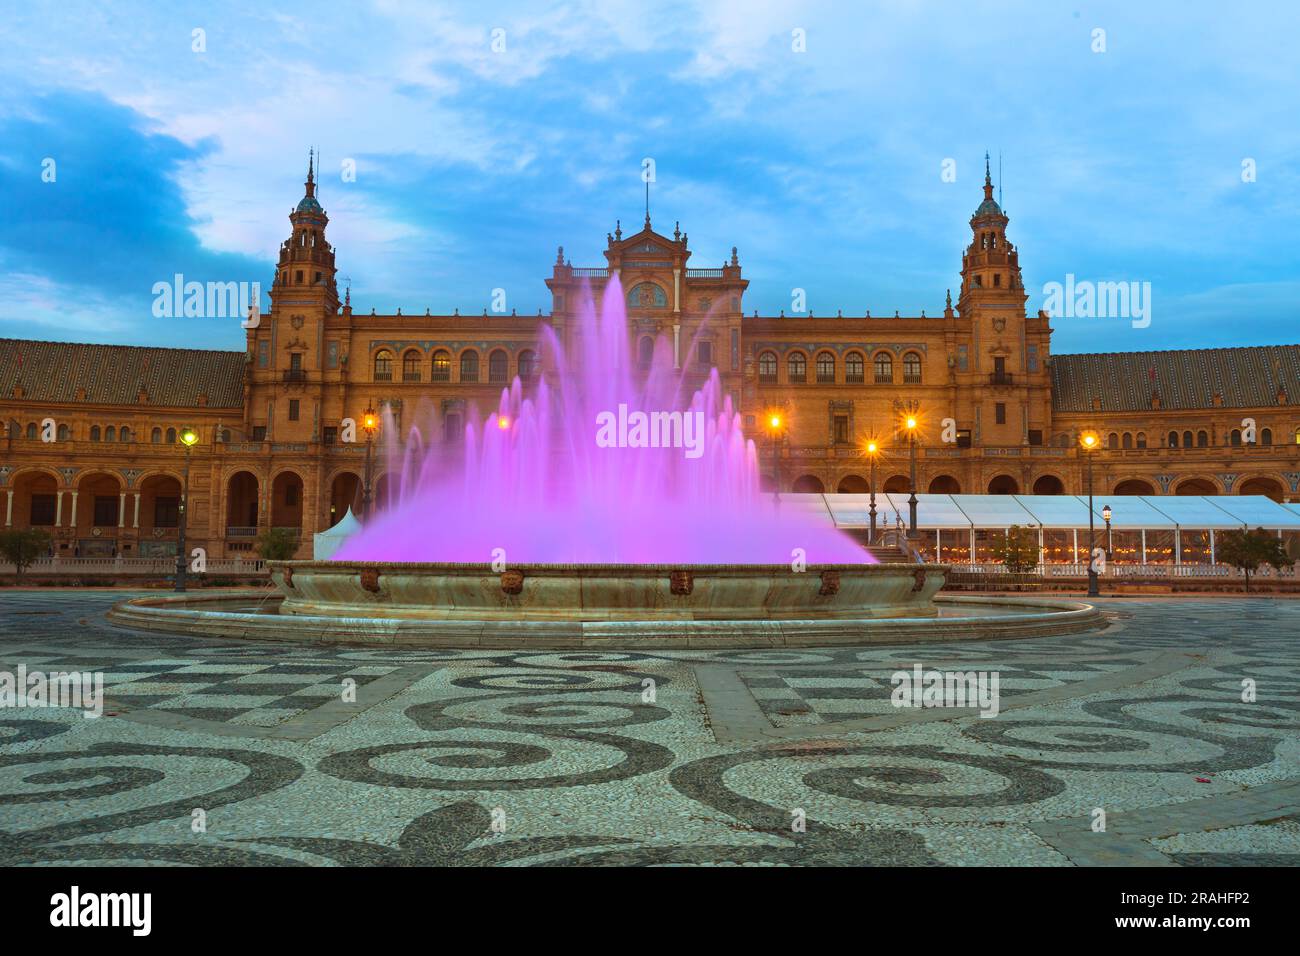 Di notte, Plaza de Espana a Siviglia abbaglia con una fontana illuminata, dove le acque viola creano una scena affascinante, creando un'accattivante Foto Stock